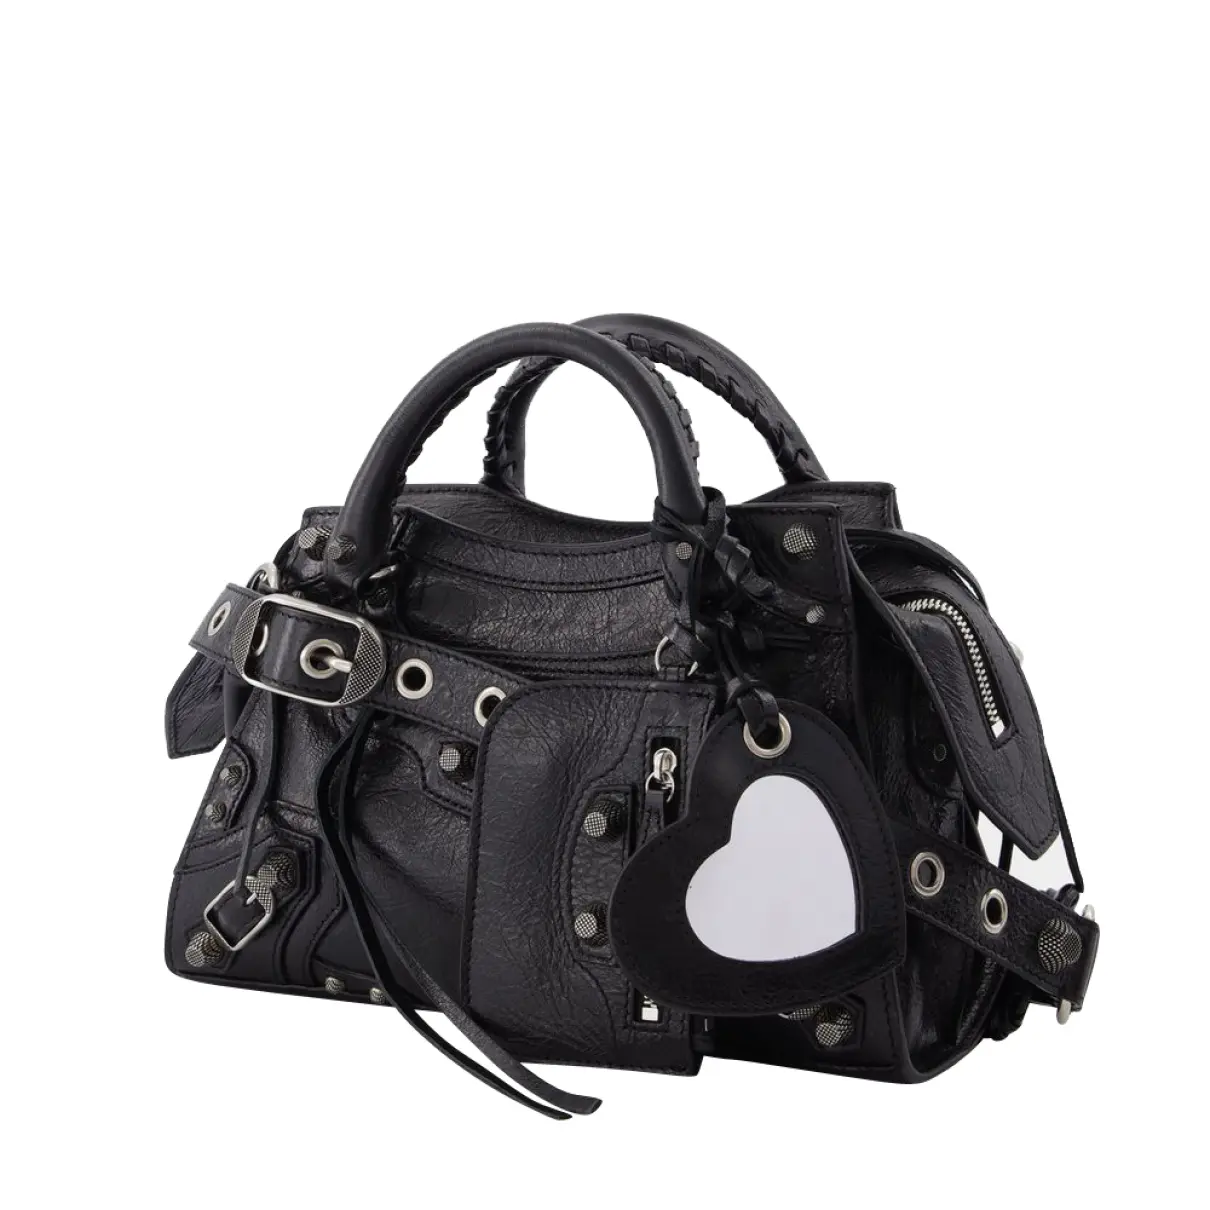 Luxury Balenciaga Handbags Women